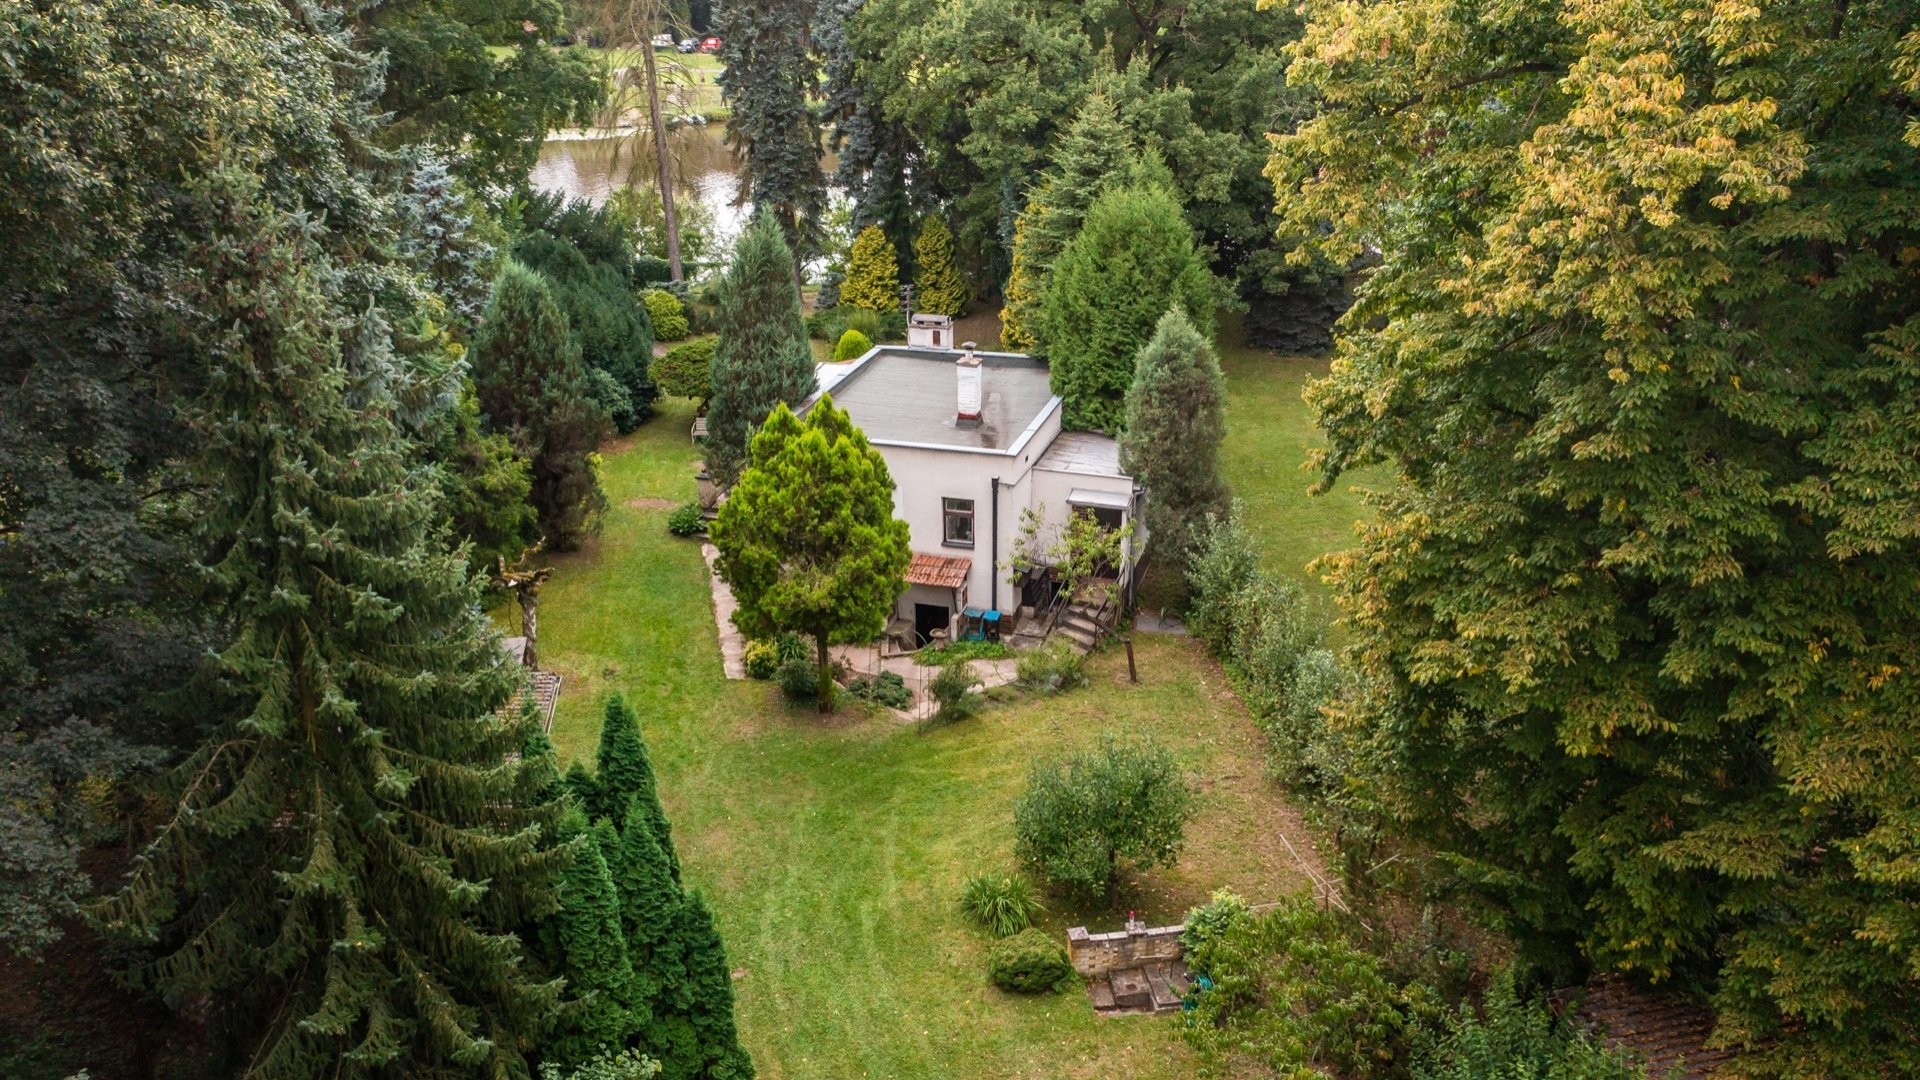 Prodej chaty 93 m² (zastavěná plocha včetně terasy) se zahradou 1423 m², přímo u Labe - Oseček